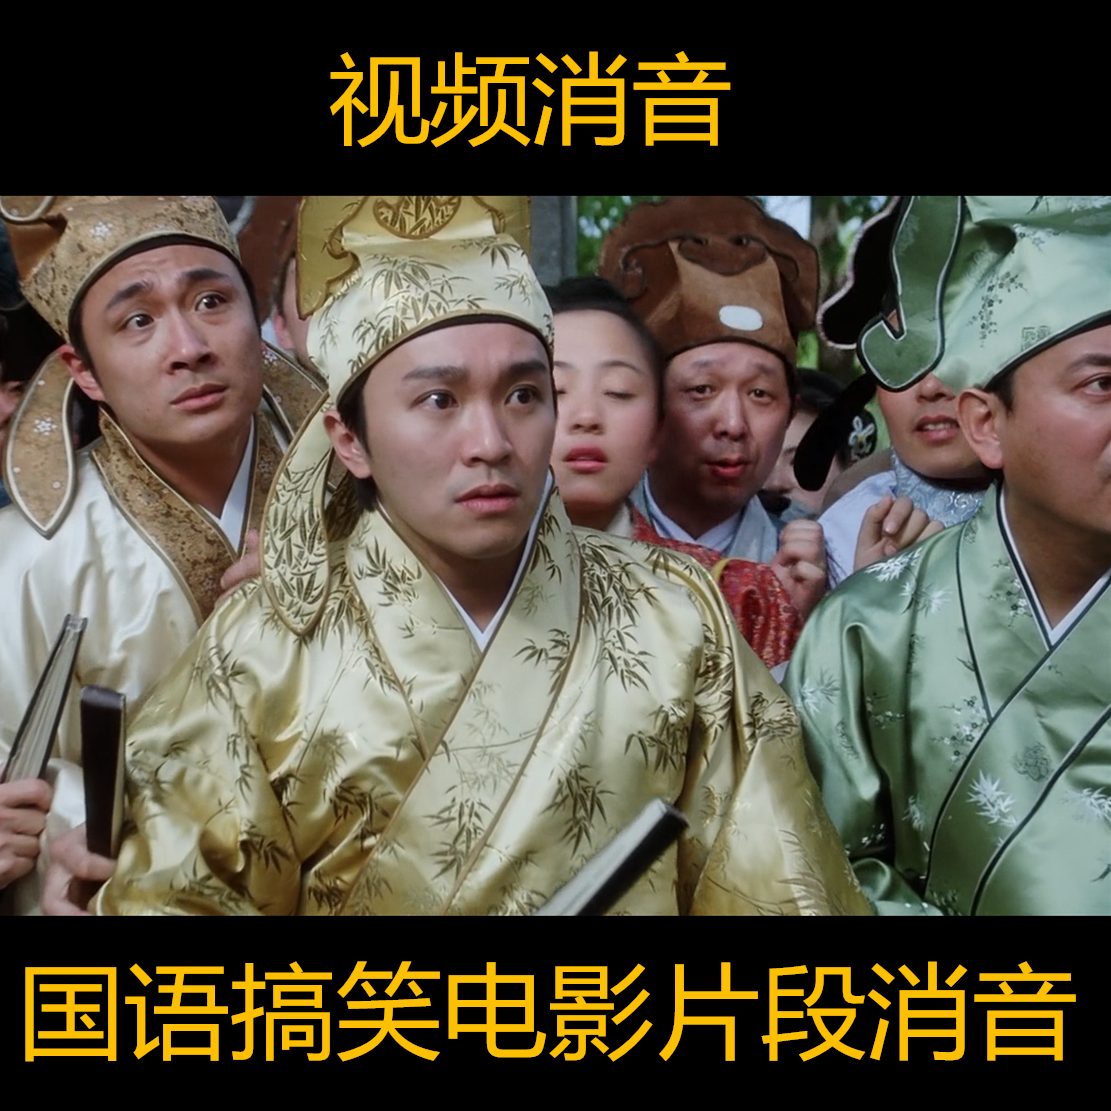 国语中文搞笑幽默电影片段消音素材去人声留背景音乐配音秀制作